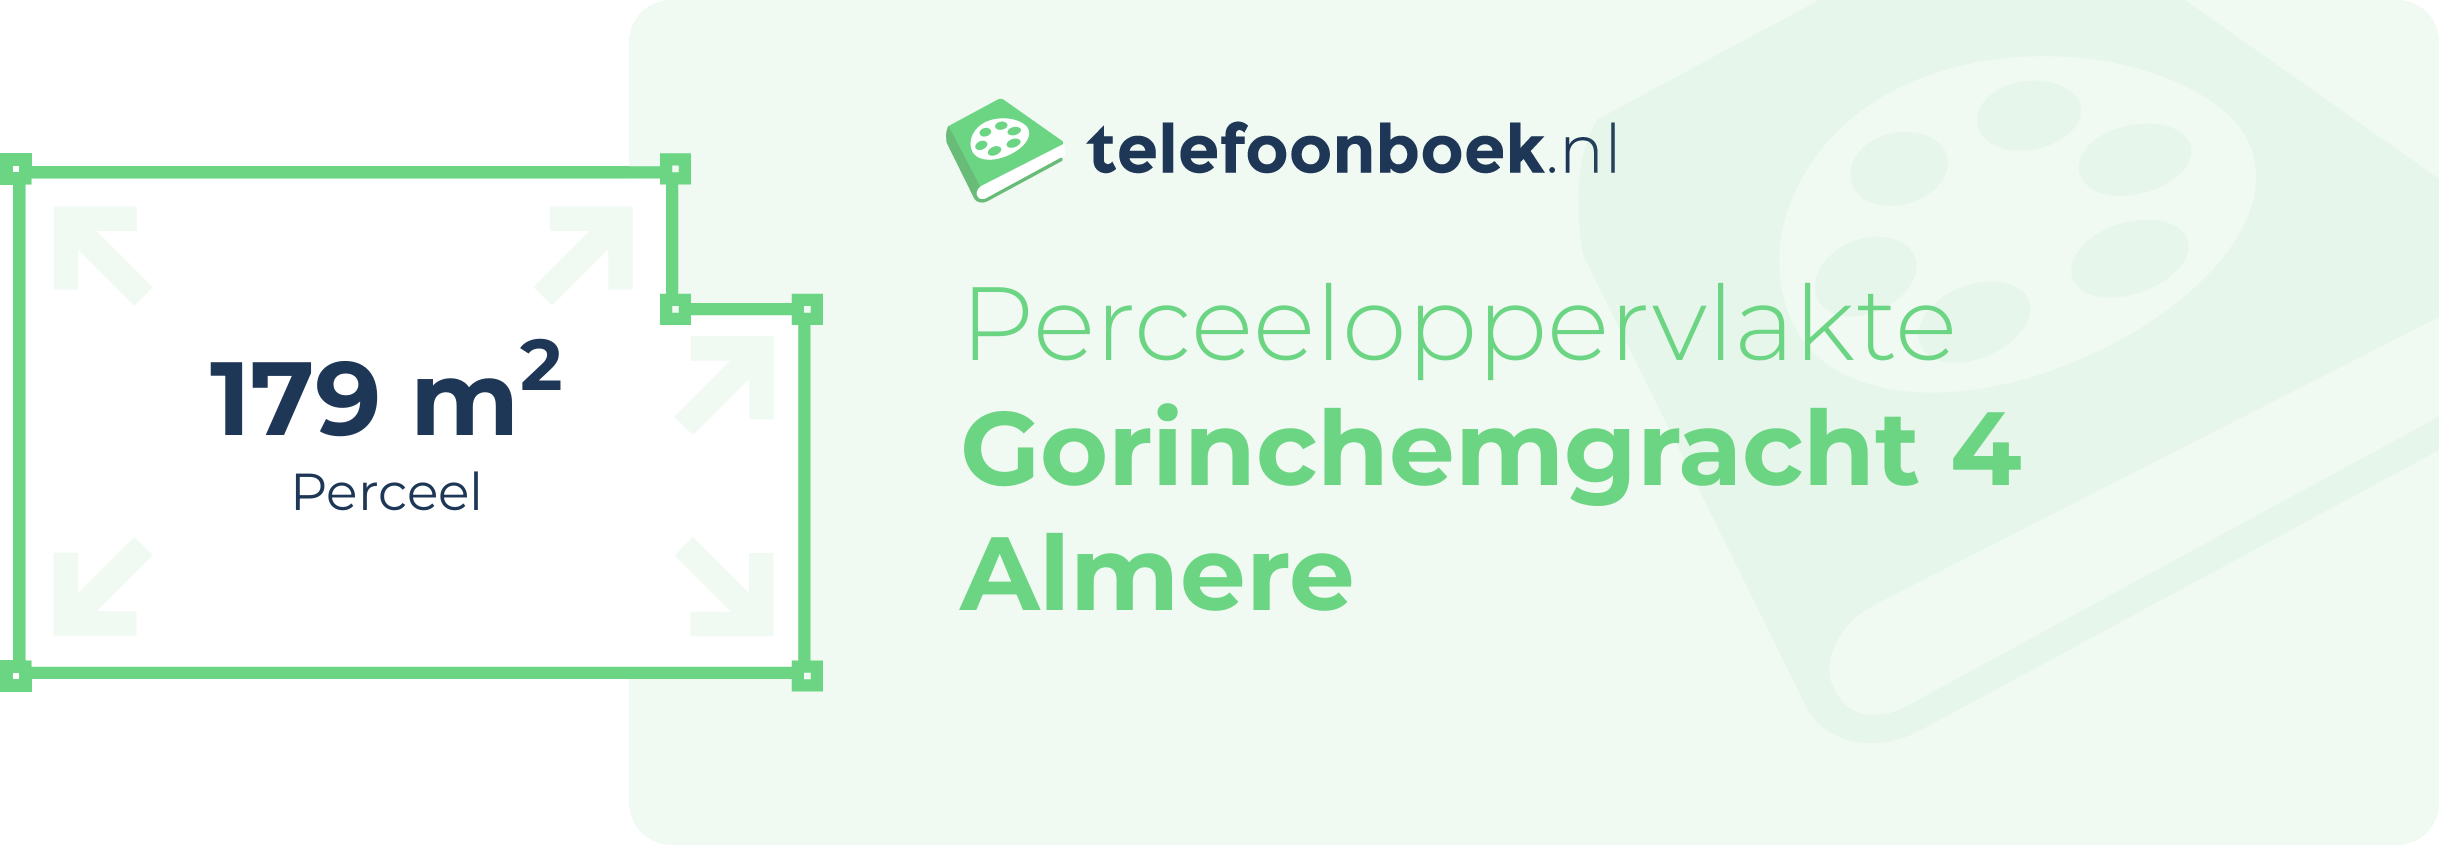 Perceeloppervlakte Gorinchemgracht 4 Almere